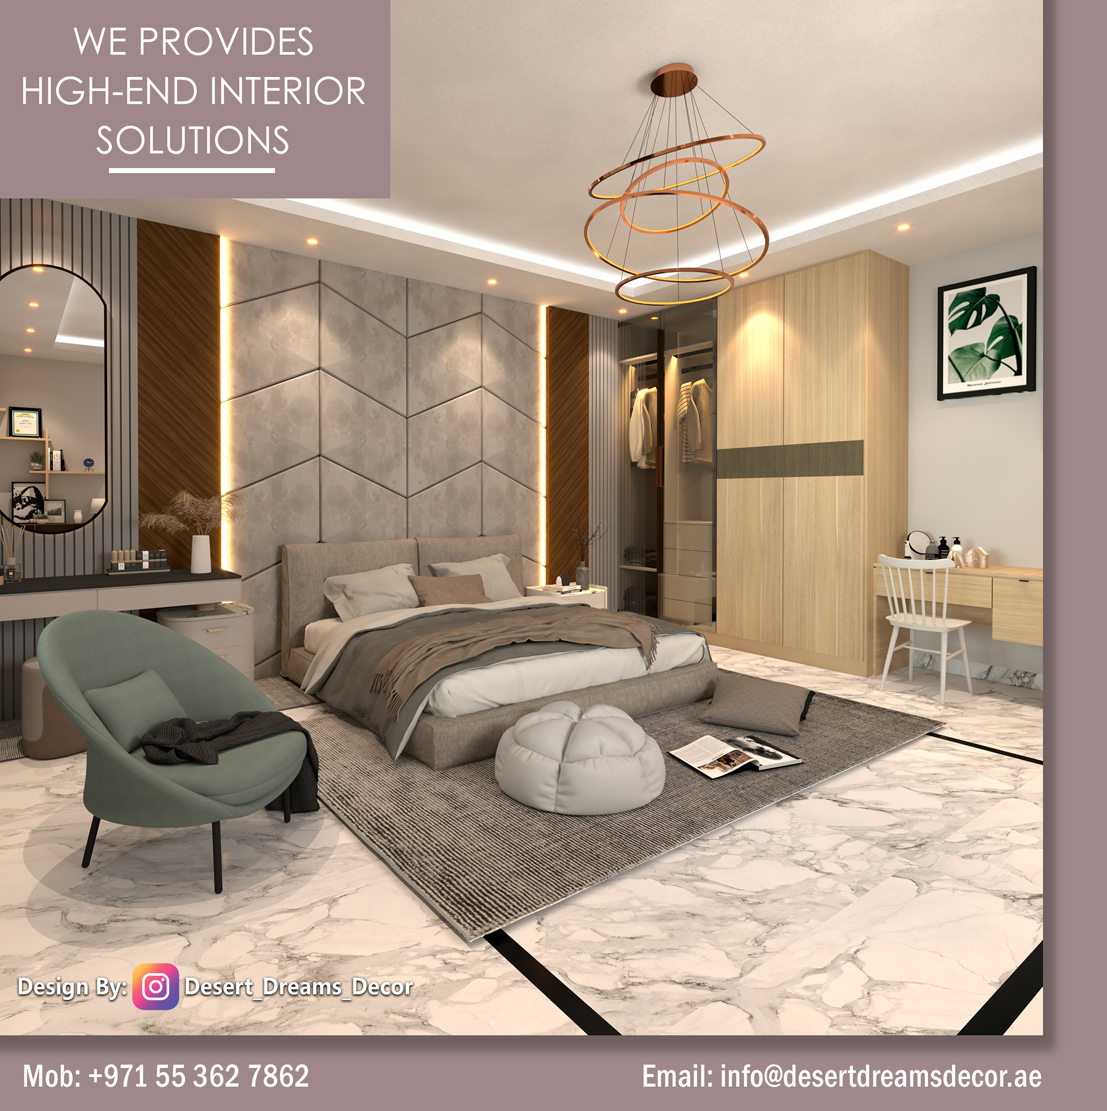 Luxury Interior Design Services in Abu Dhabi_Dubai_Uae.jpg